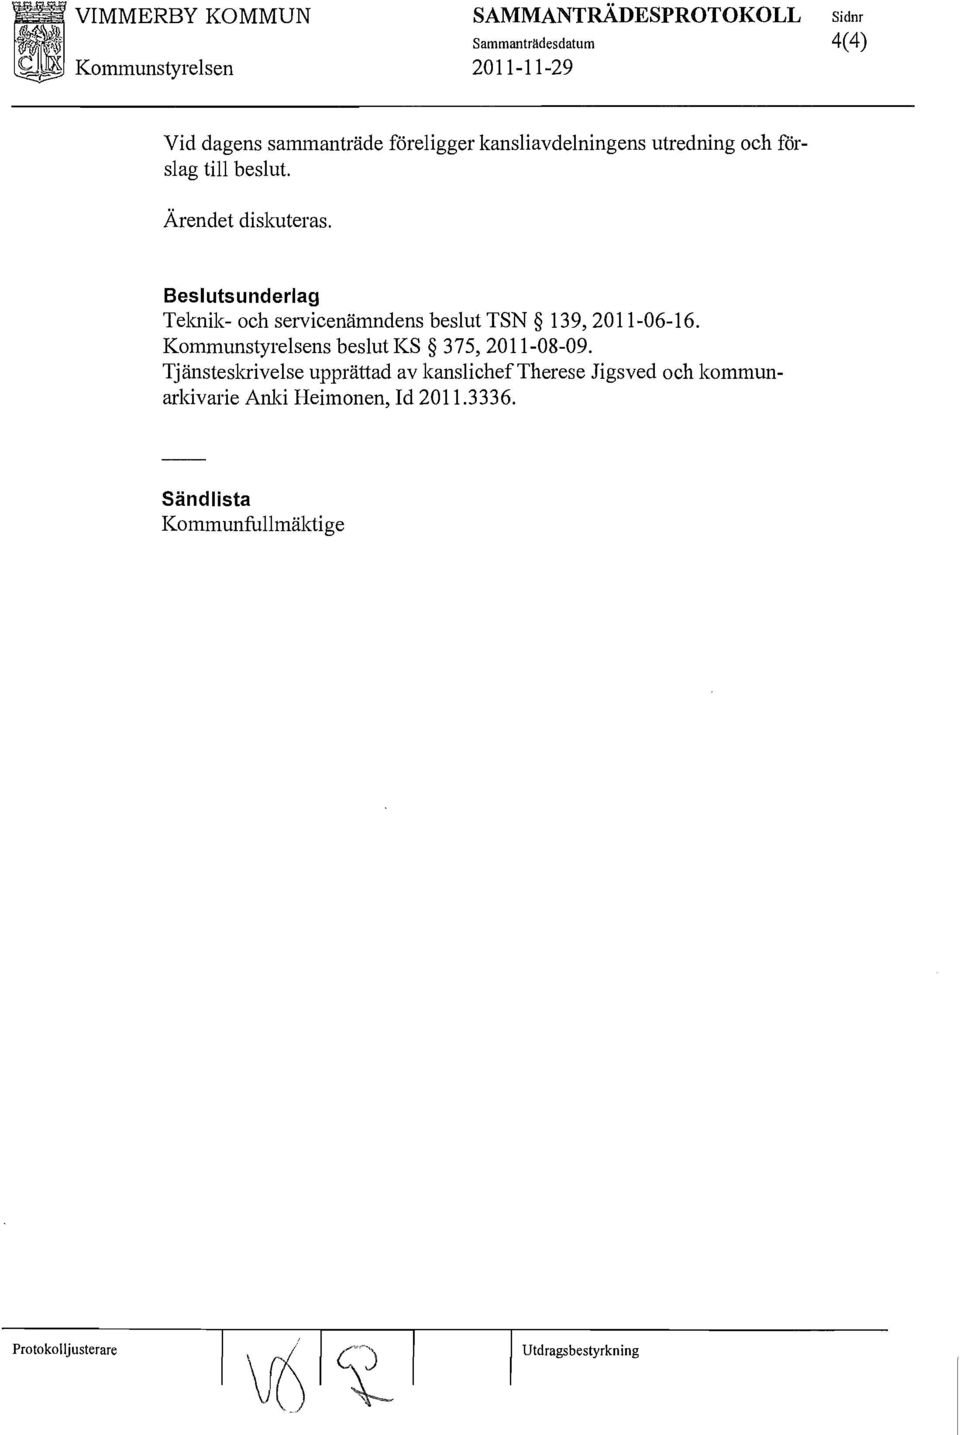 Beslutsunderlag Teknik- och servicenämndens beslut TSN 139,2011-06-16. Kommunstyrelsens beslut KS 375,2011-08-09.